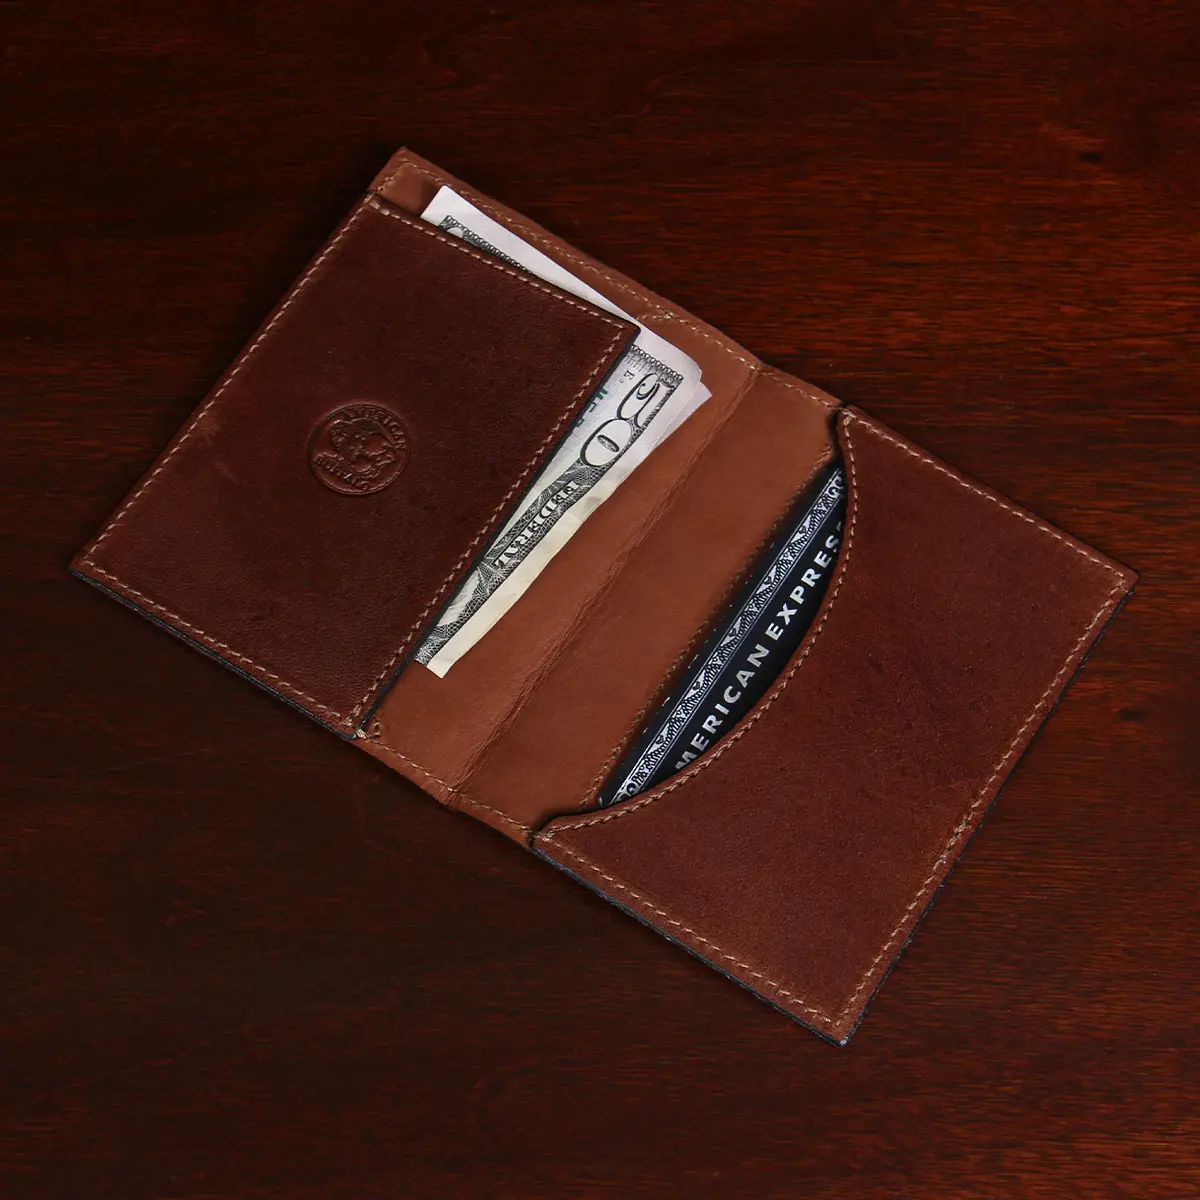 17 Men's wallets ideas  wallet, wallet men, leather wallet